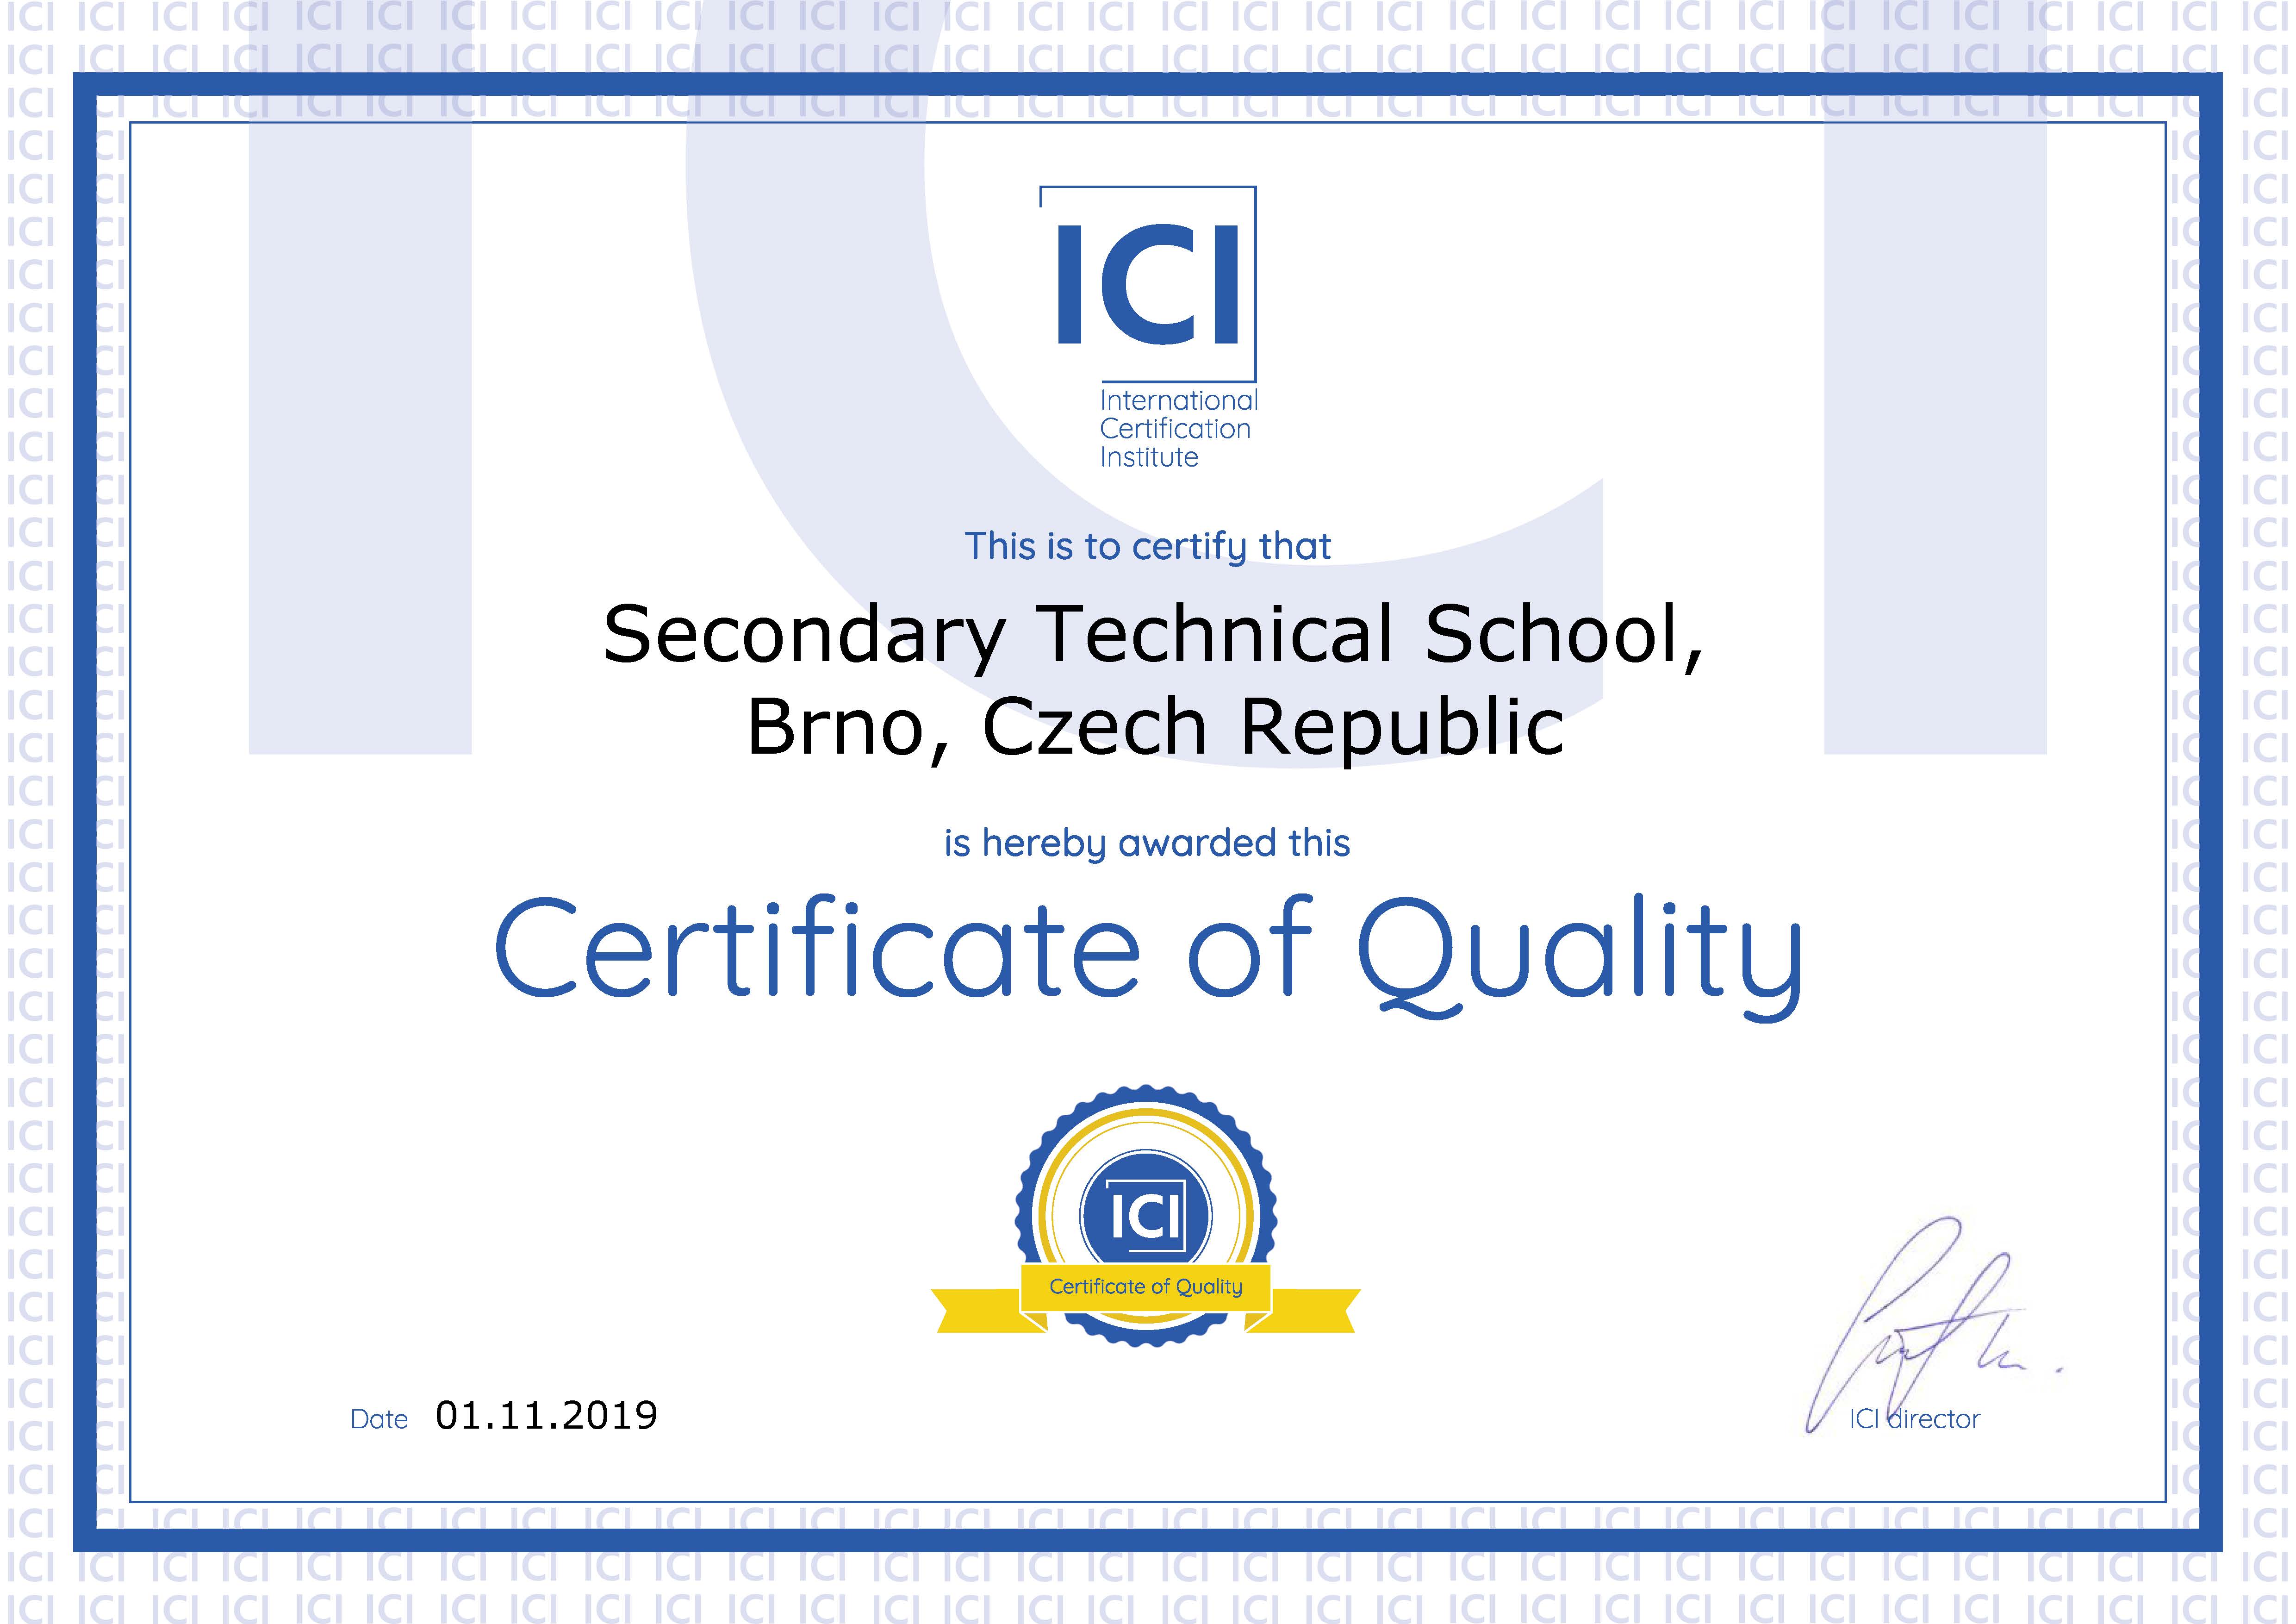 Certyfikat instytucji ICI